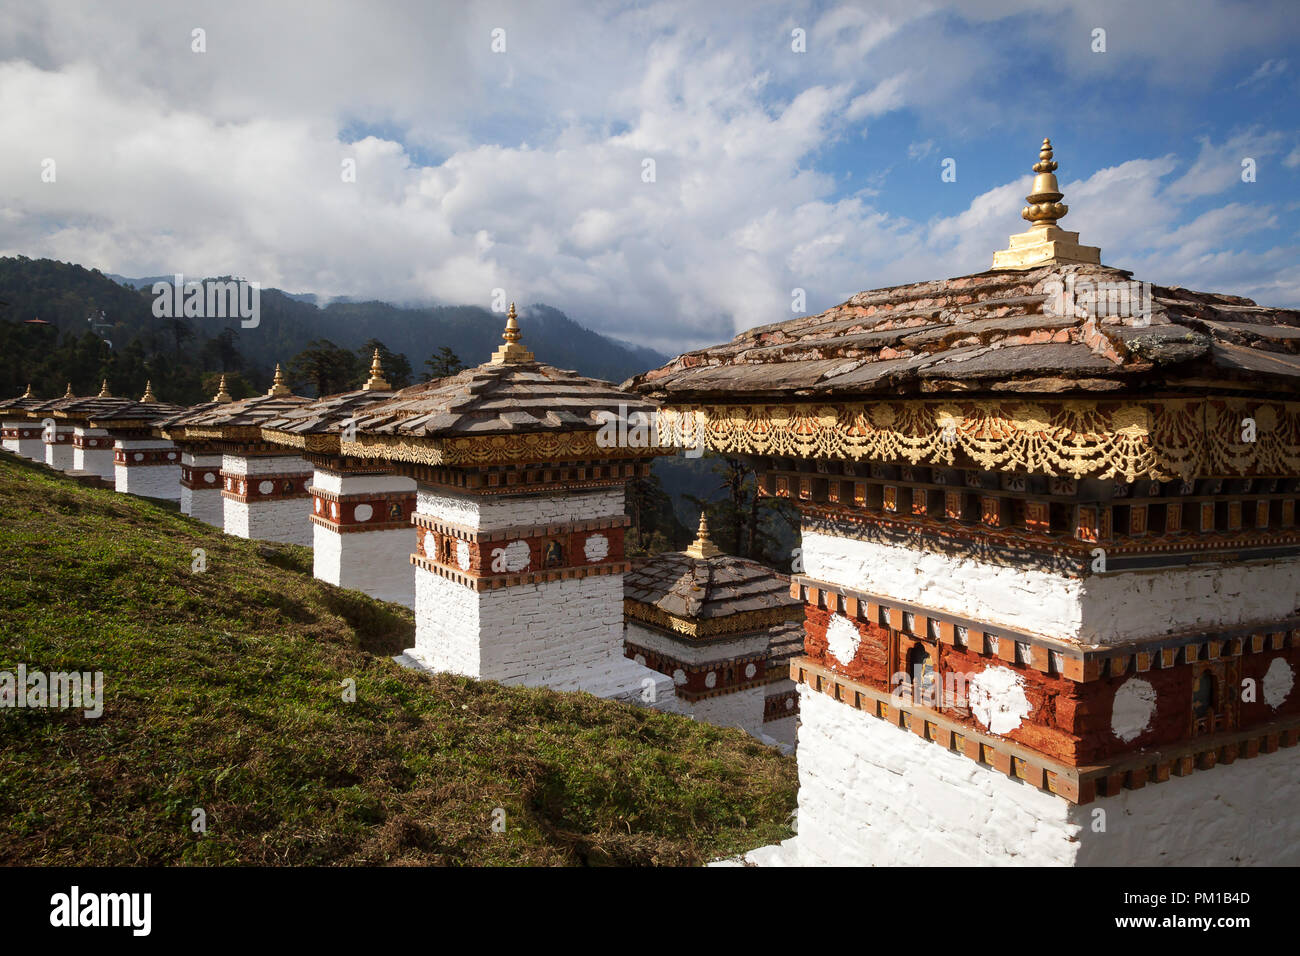 108 stupas (chortens) at Dochu La pass. Bhutan Stock Photo